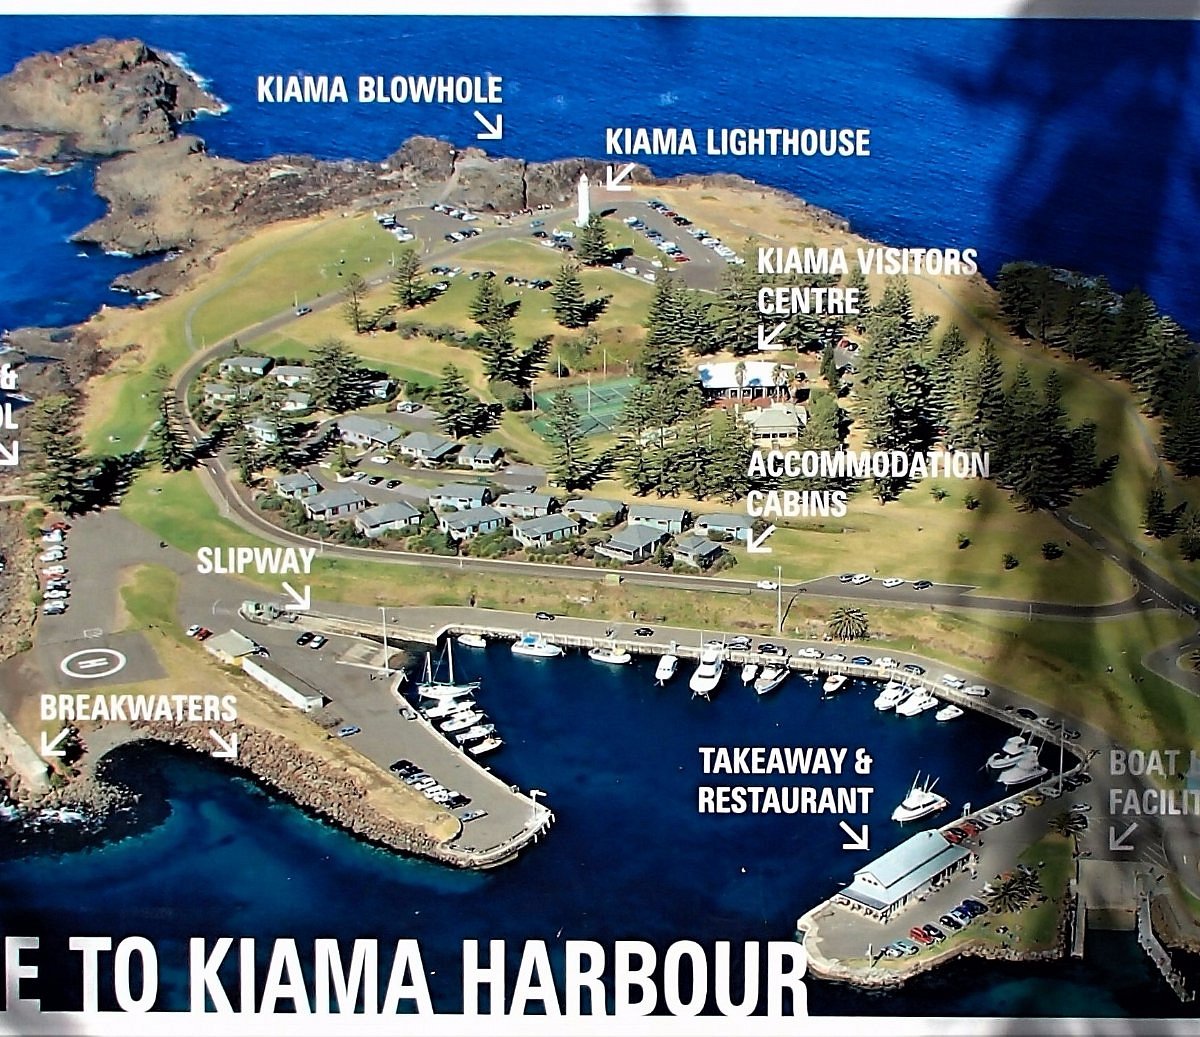 6 Boutique Bars to try in Kiama - Destination Kiama